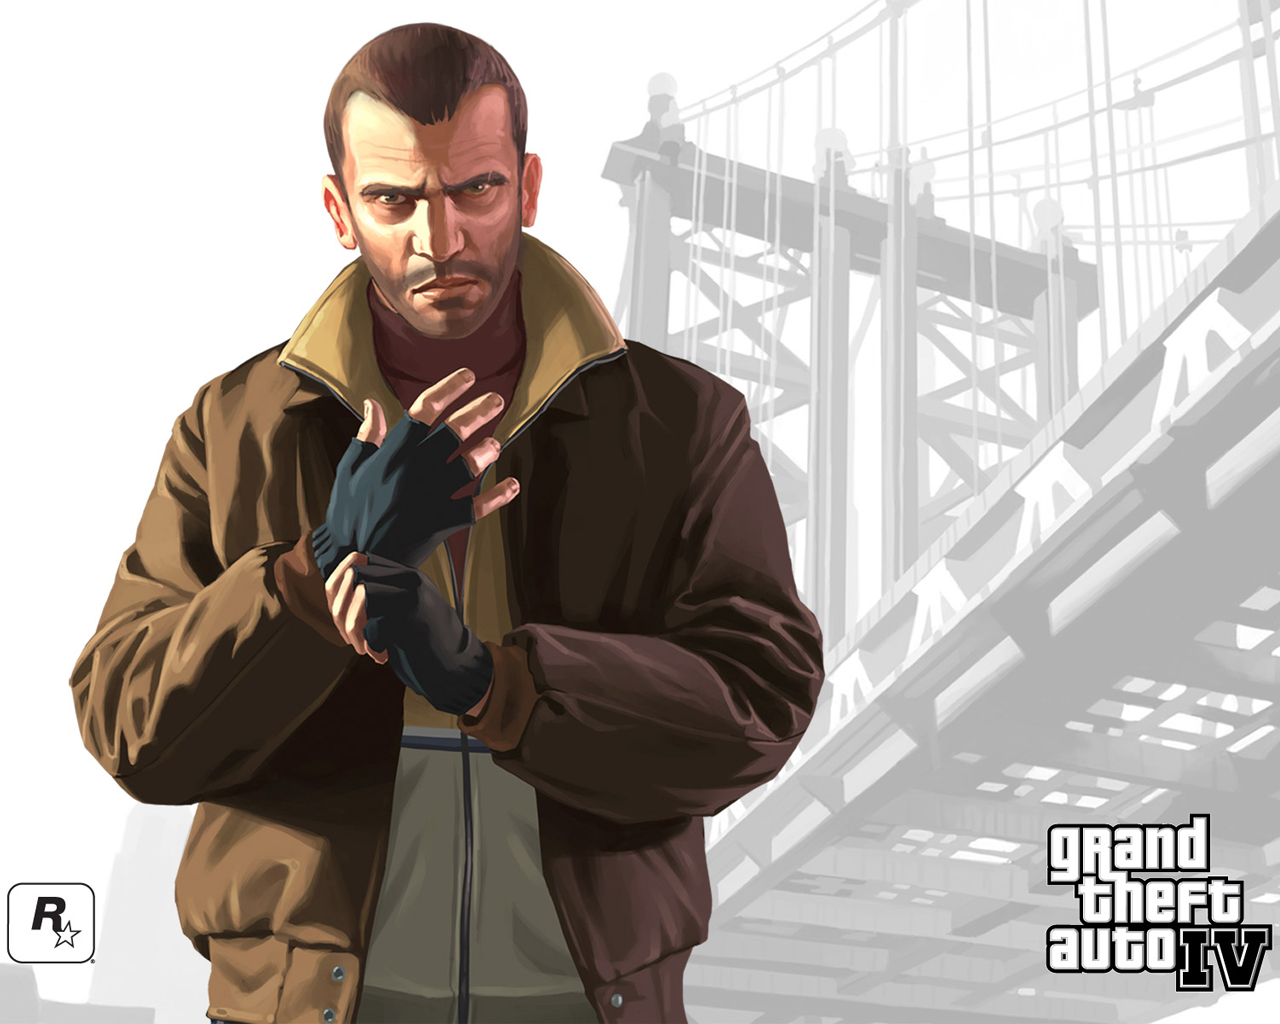 Популярные заставки и фоны Grand Theft Auto Iv на компьютер